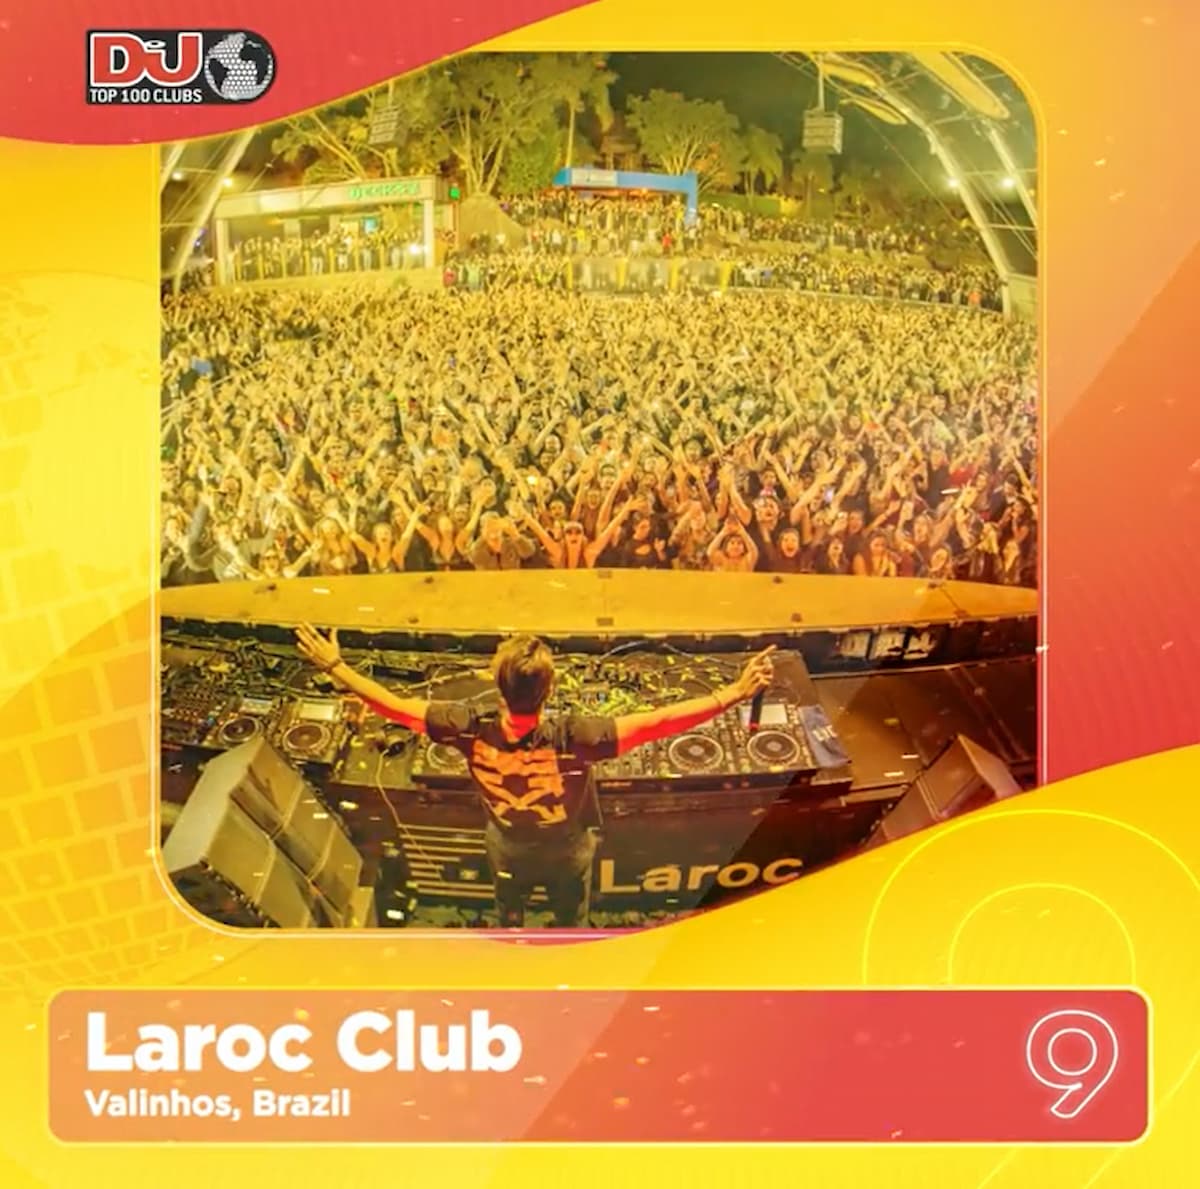 Laroc Club conquista a #9 posição do Top 100 Clubs da DJ Mag 2022!